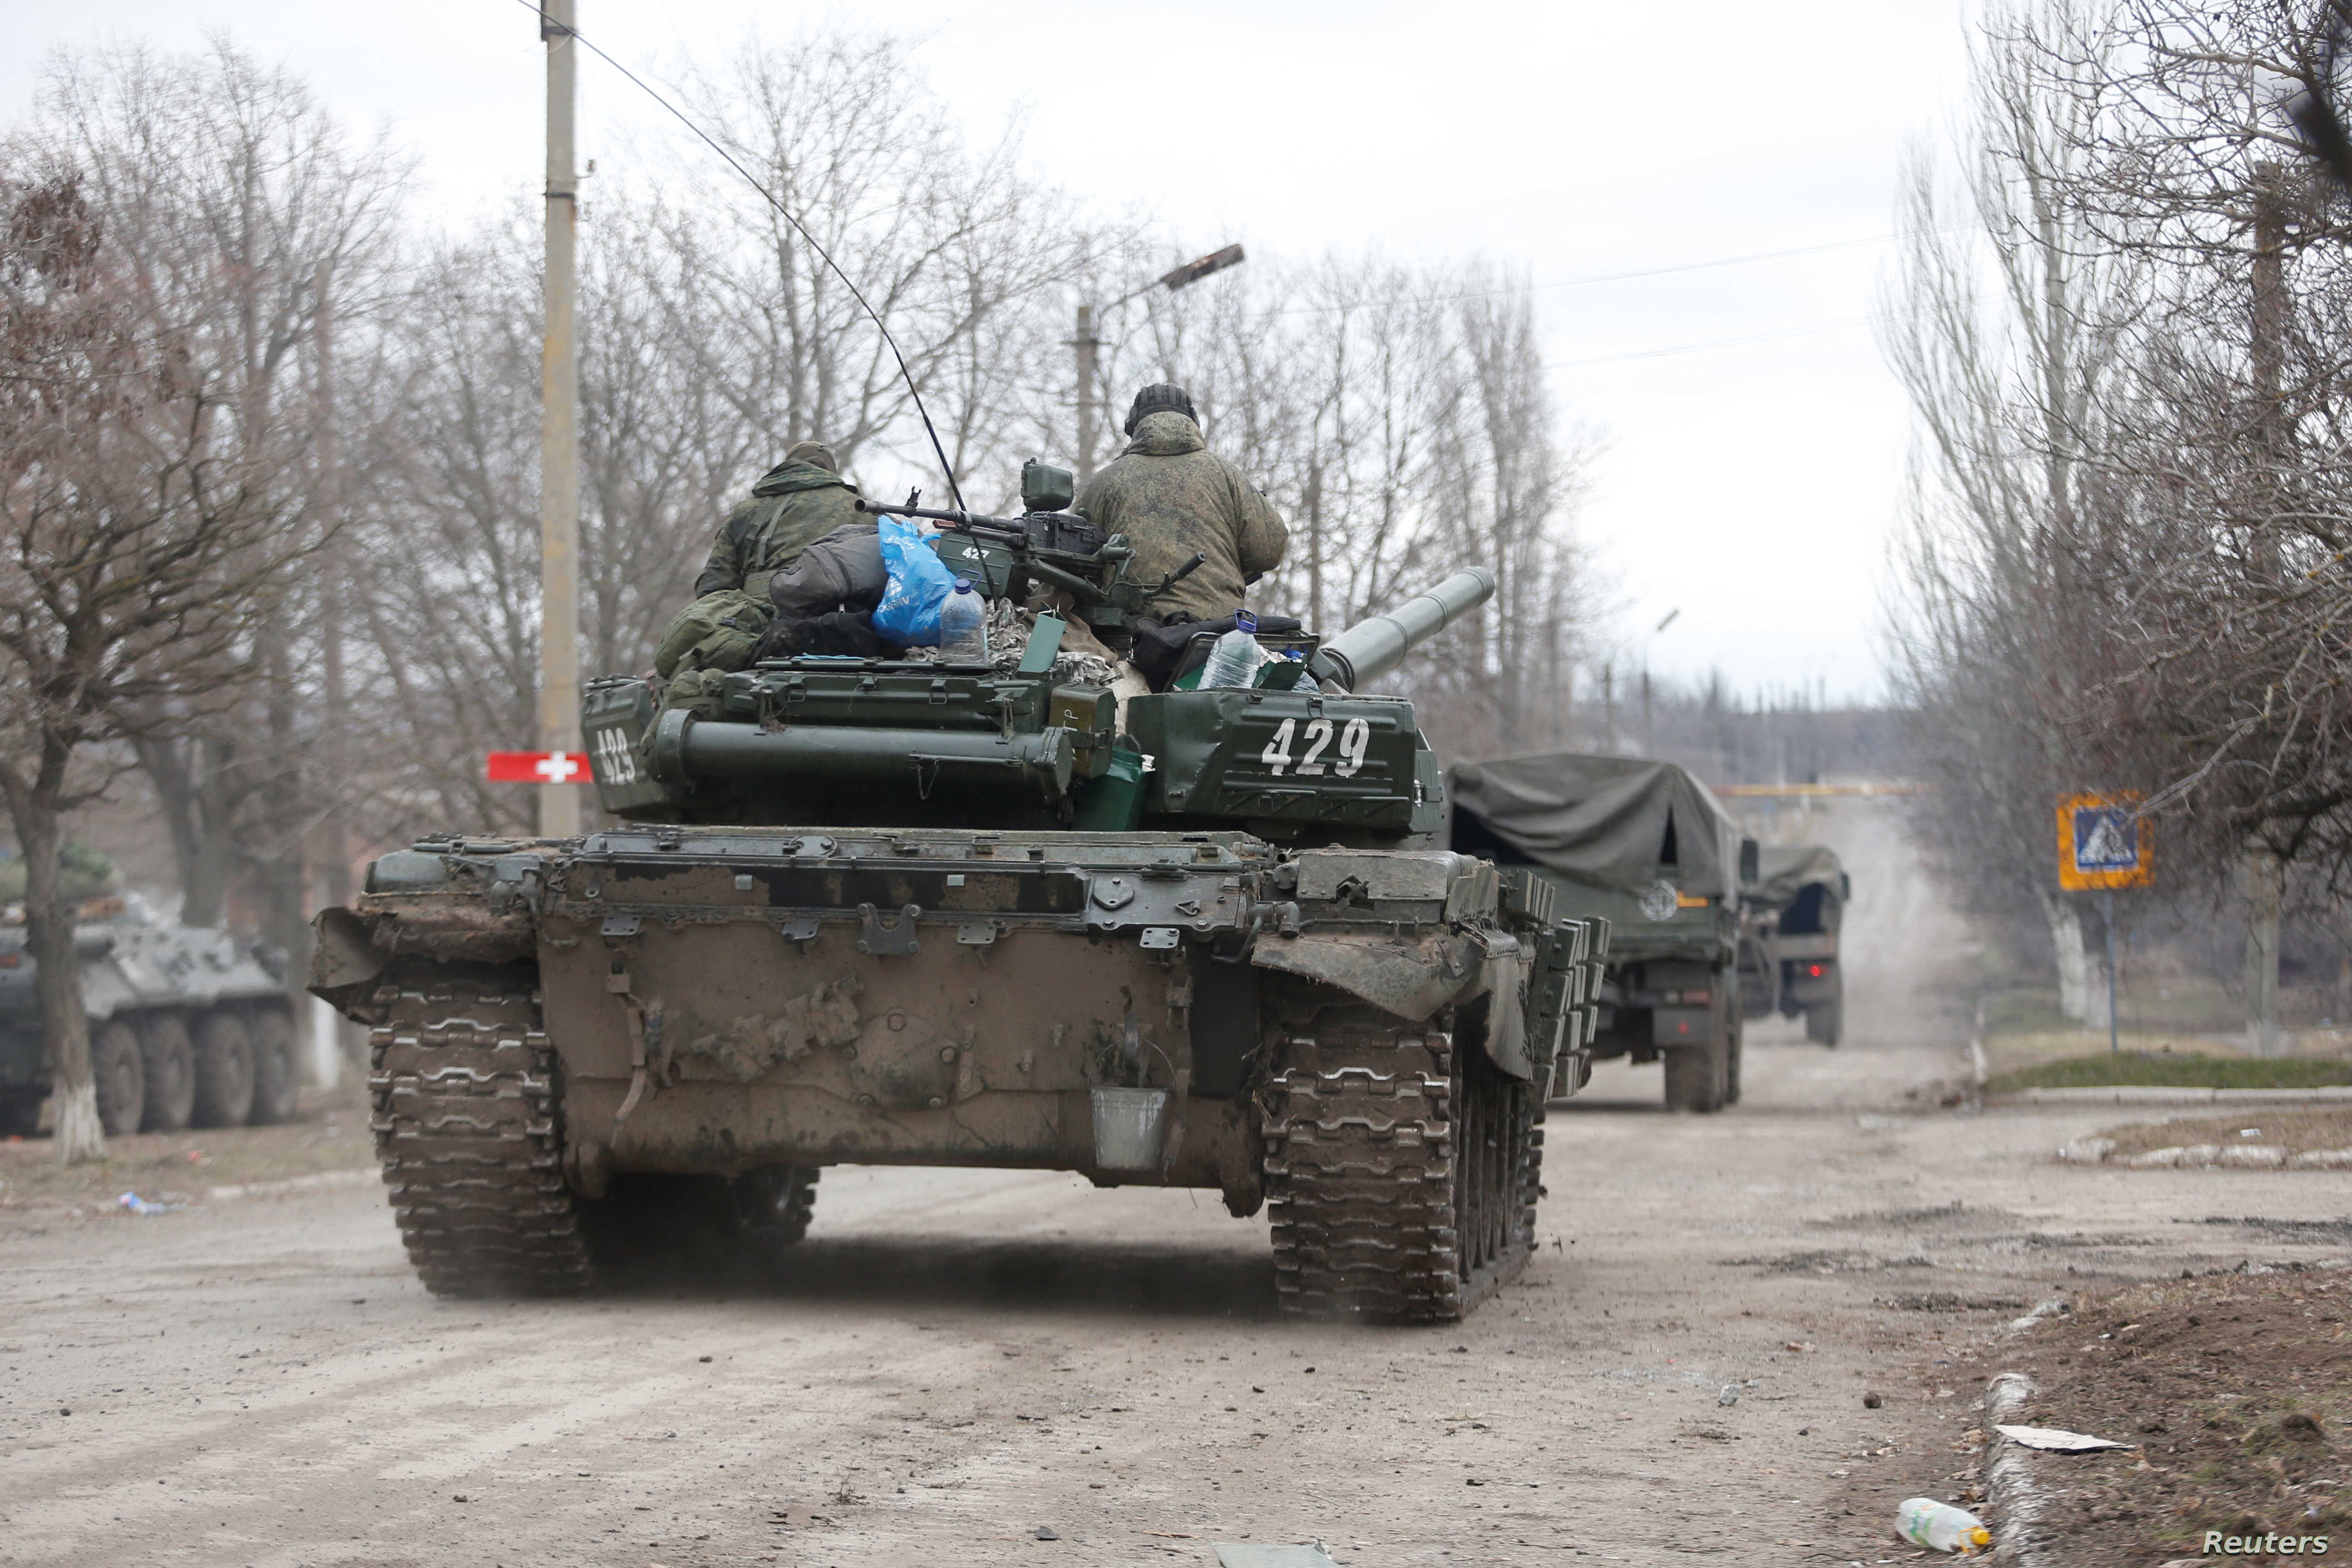 الجيش الروسي يشن هجوما صاروخيا على مدينة أوديسا